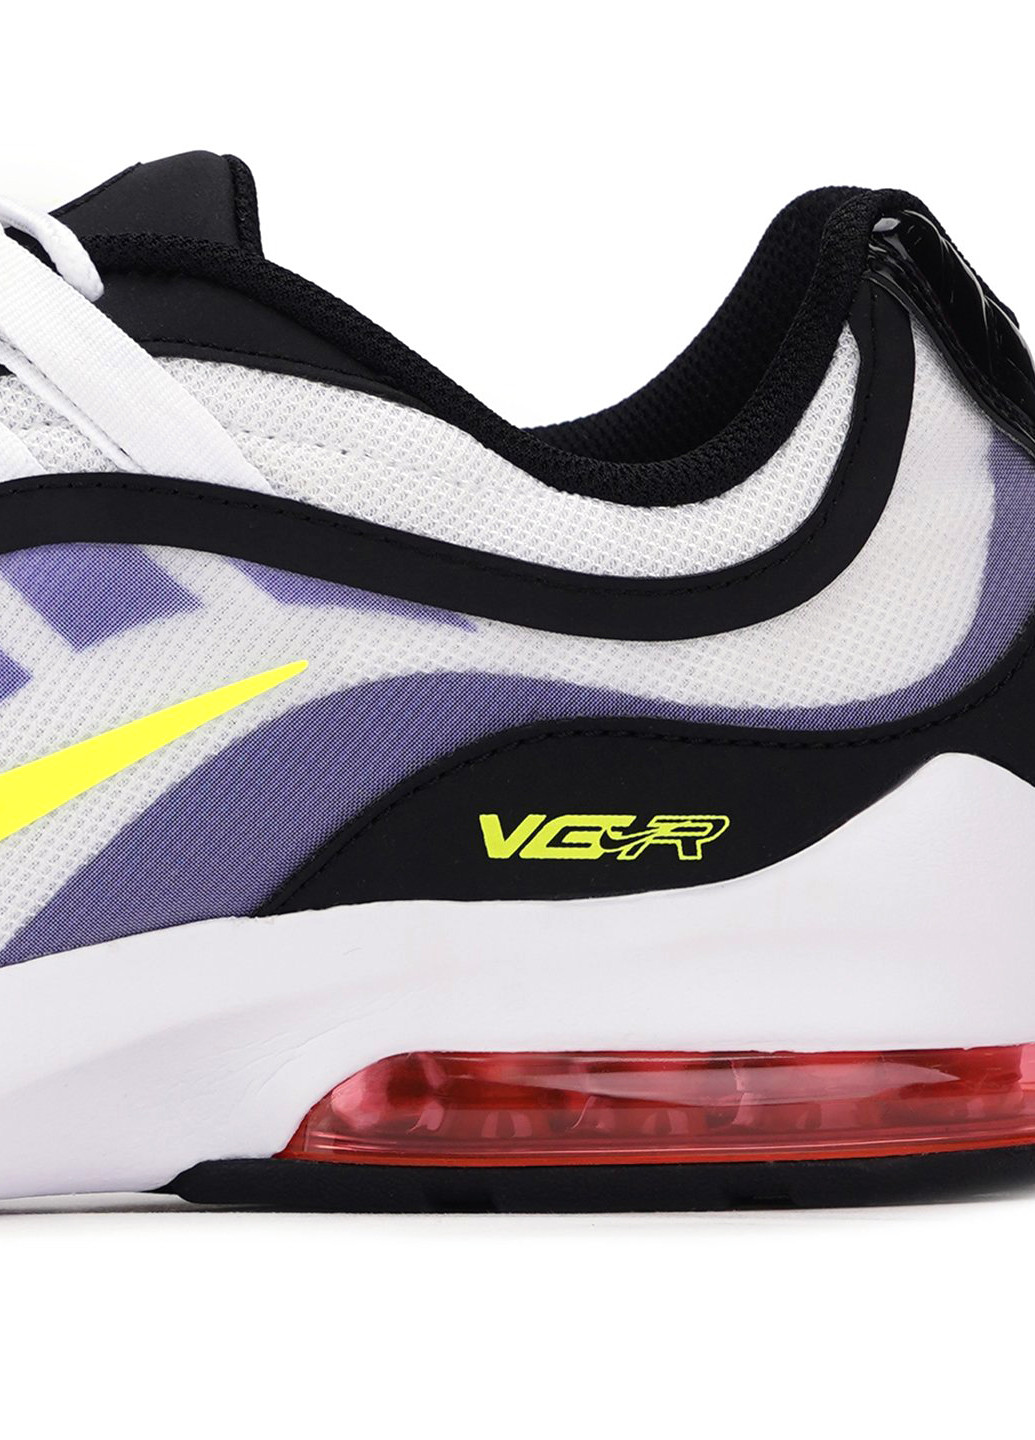 Цветные всесезонные кроссовки Nike Air Max Vg-R